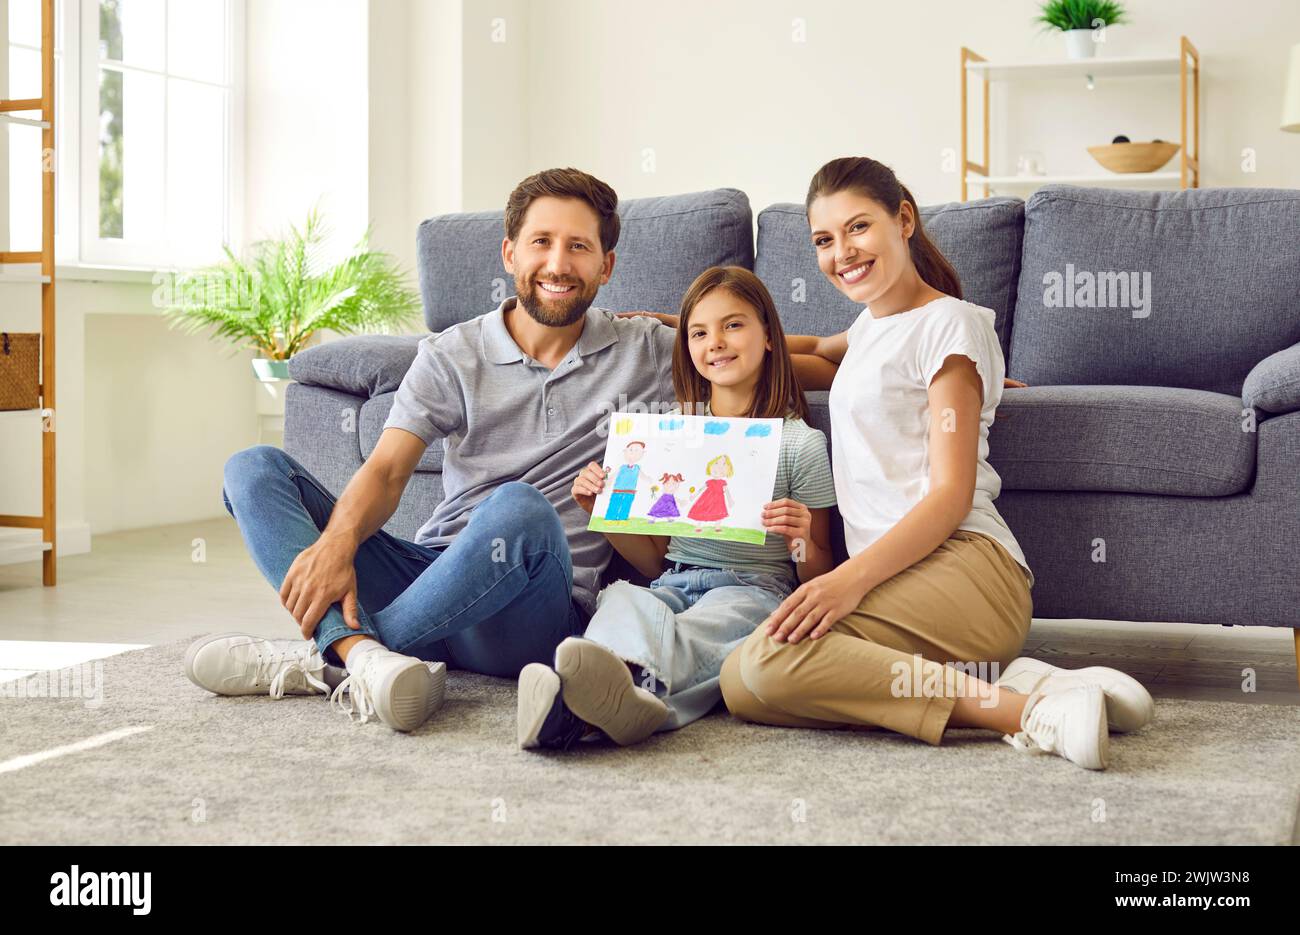 Fröhliches kleines Mädchen, das mit ihren jungen Eltern zu Hause sitzt und eine Zeichnung einer glücklichen Familie hält. Stockfoto